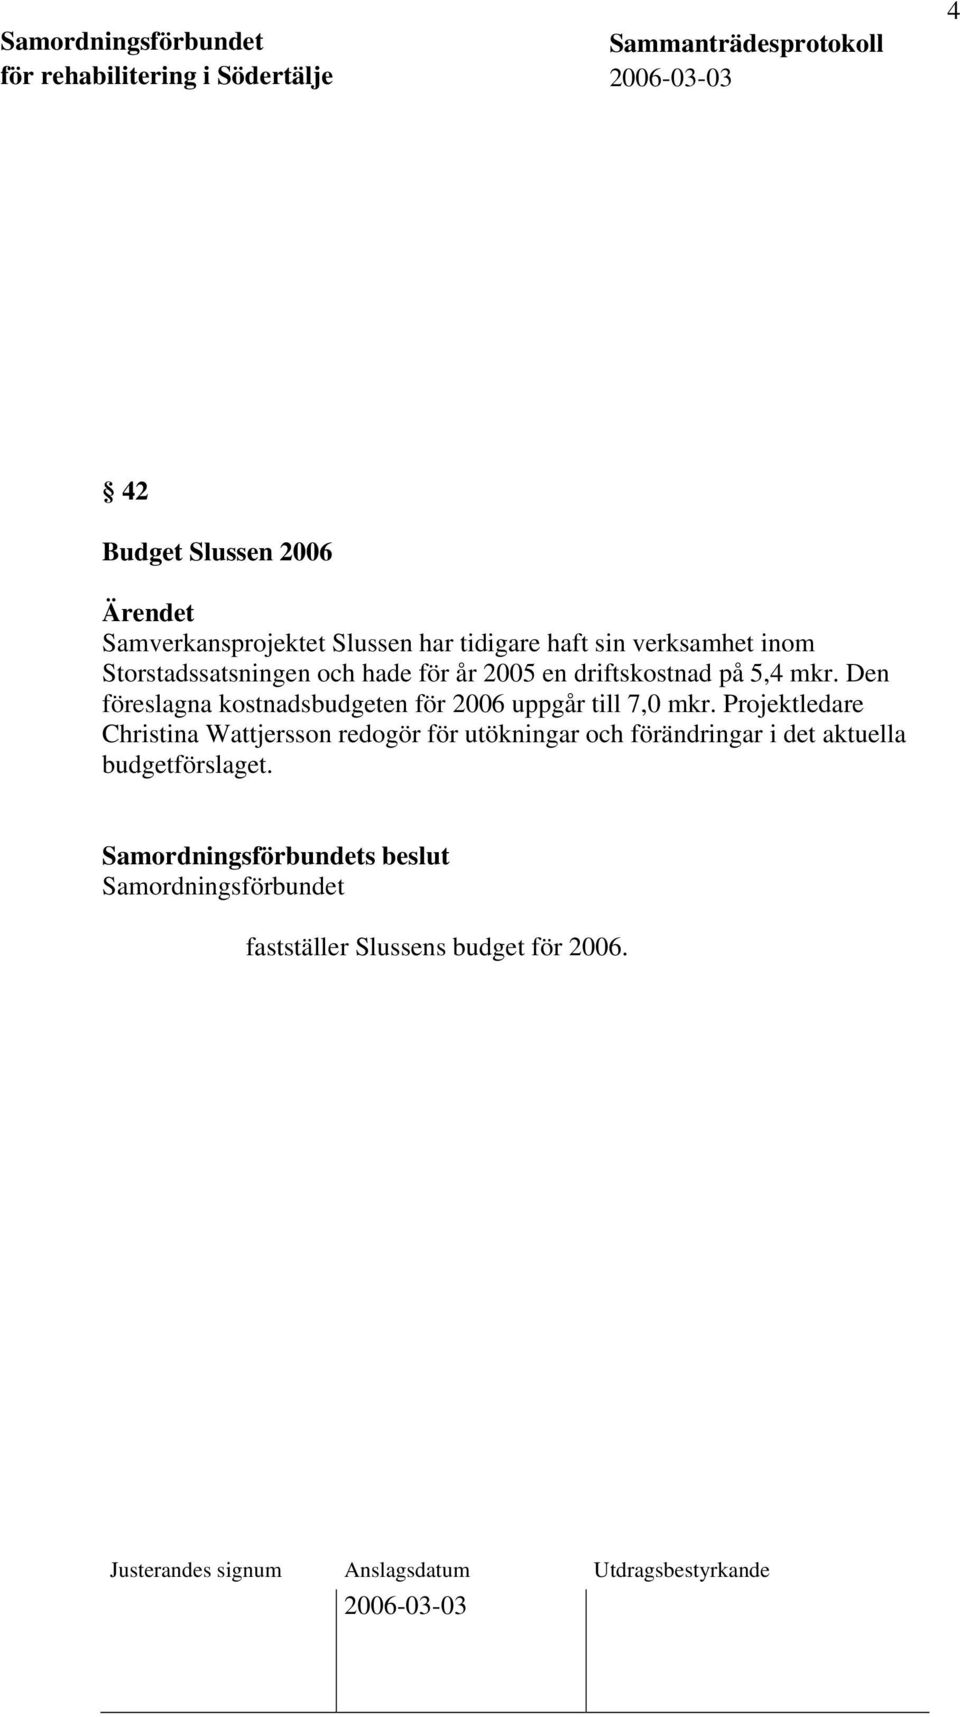 Den föreslagna kostnadsbudgeten för 2006 uppgår till 7,0 mkr.